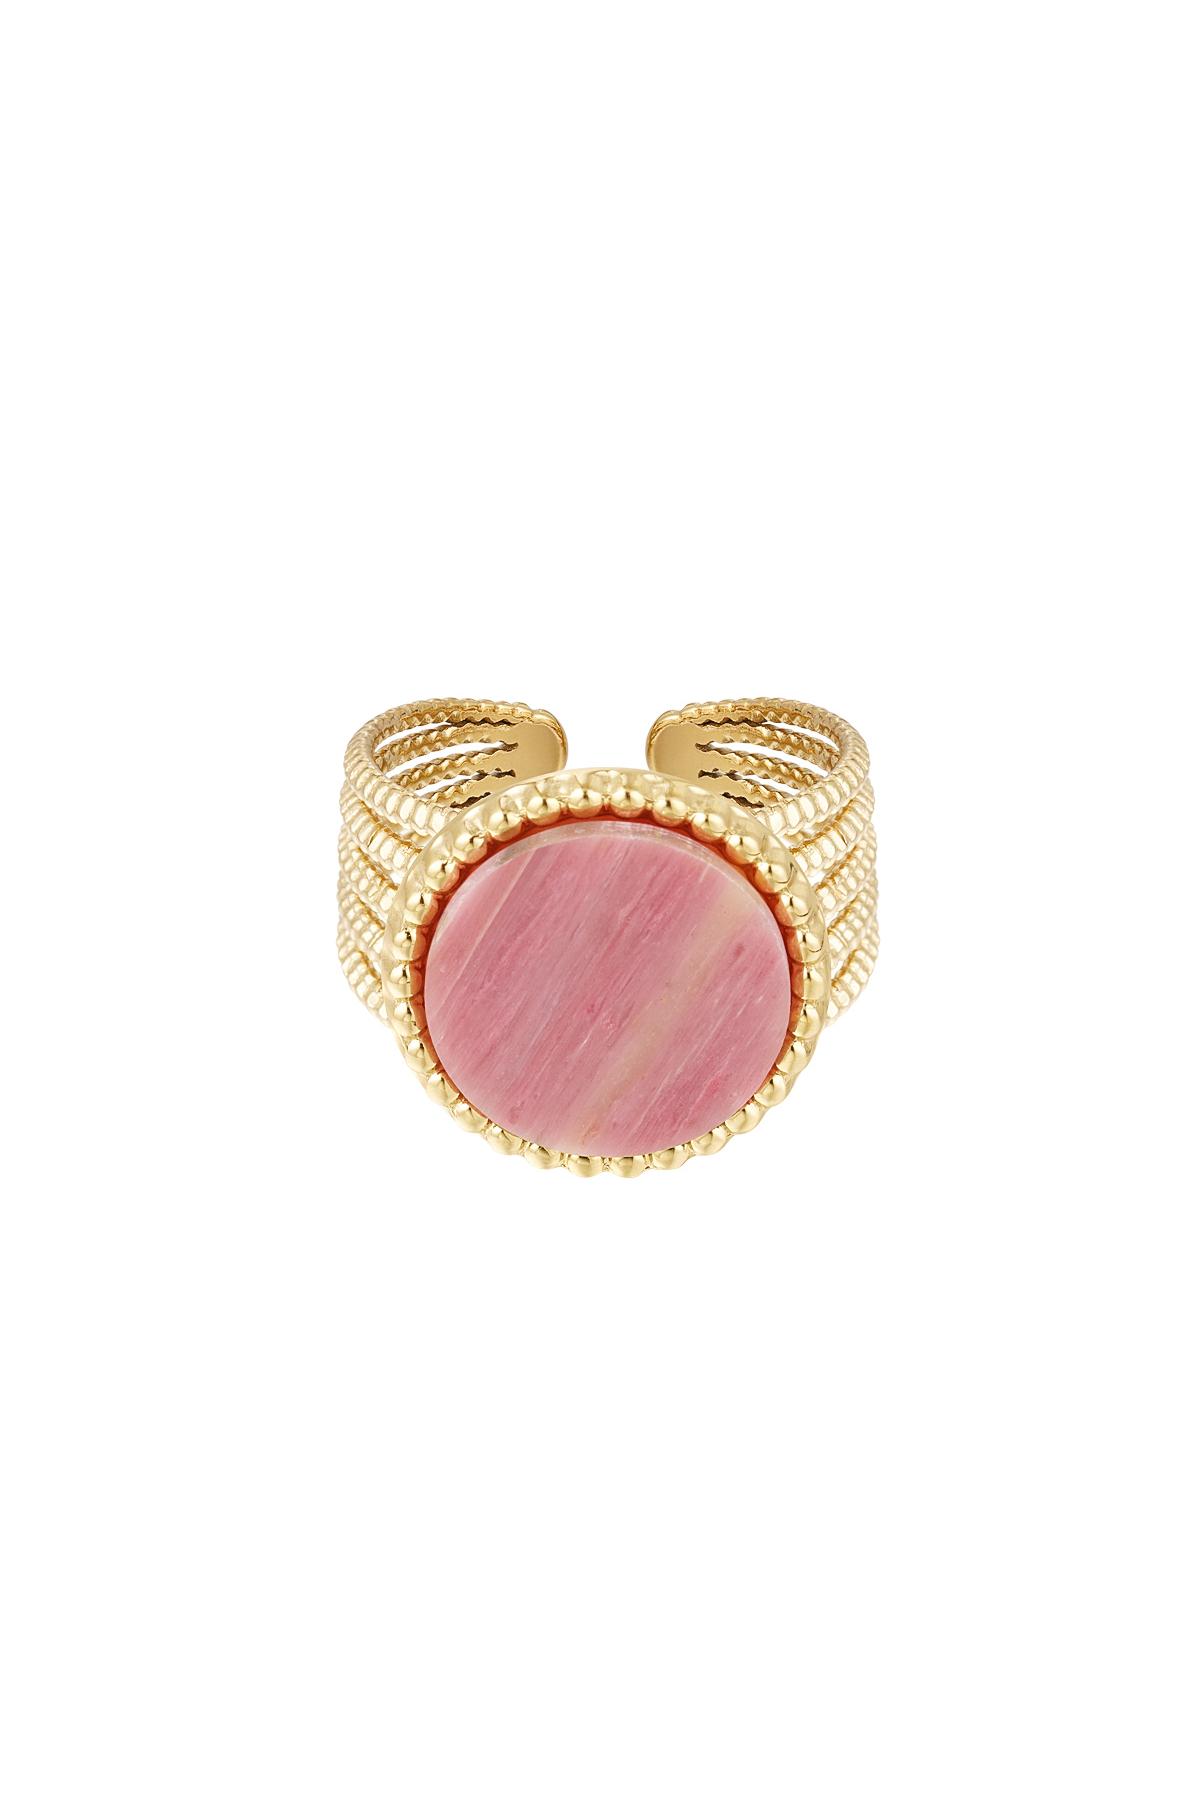 Taşlı Bildiri Yüzüğü - Pembe - Doğal taş koleksiyonu Pink & Gold Stainless Steel One size 